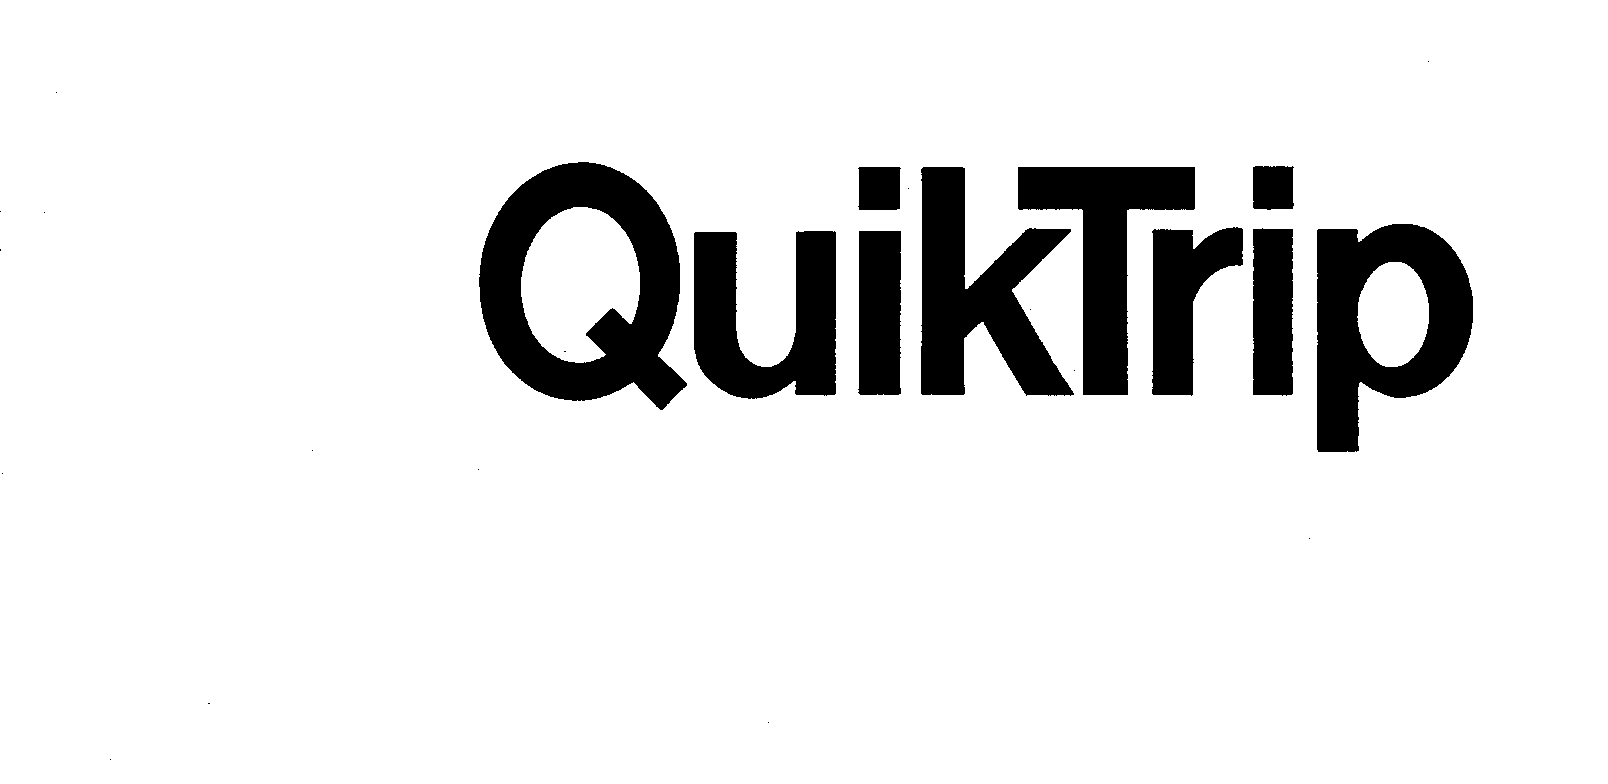 Trademark Logo QUIKTRIP